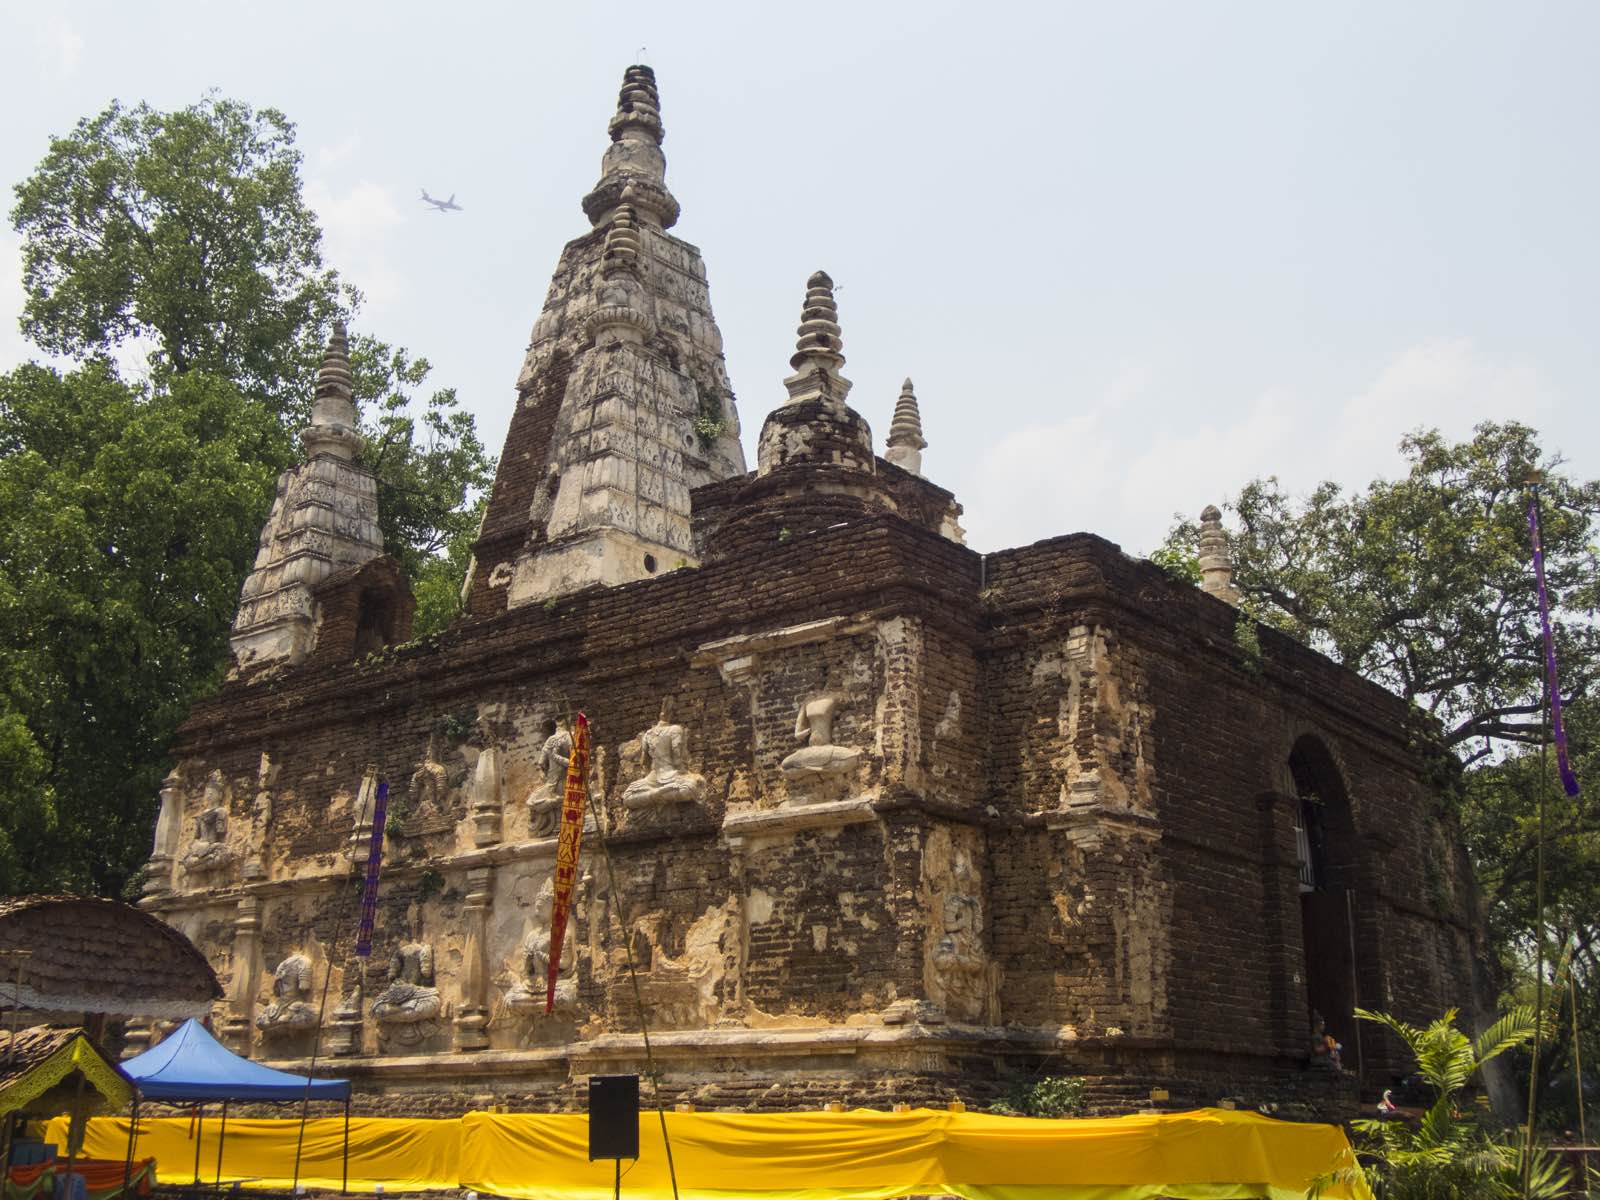 又称泽玉寺，建于1455年，寺内栽种来自印度的菩提树。1477年曾有1